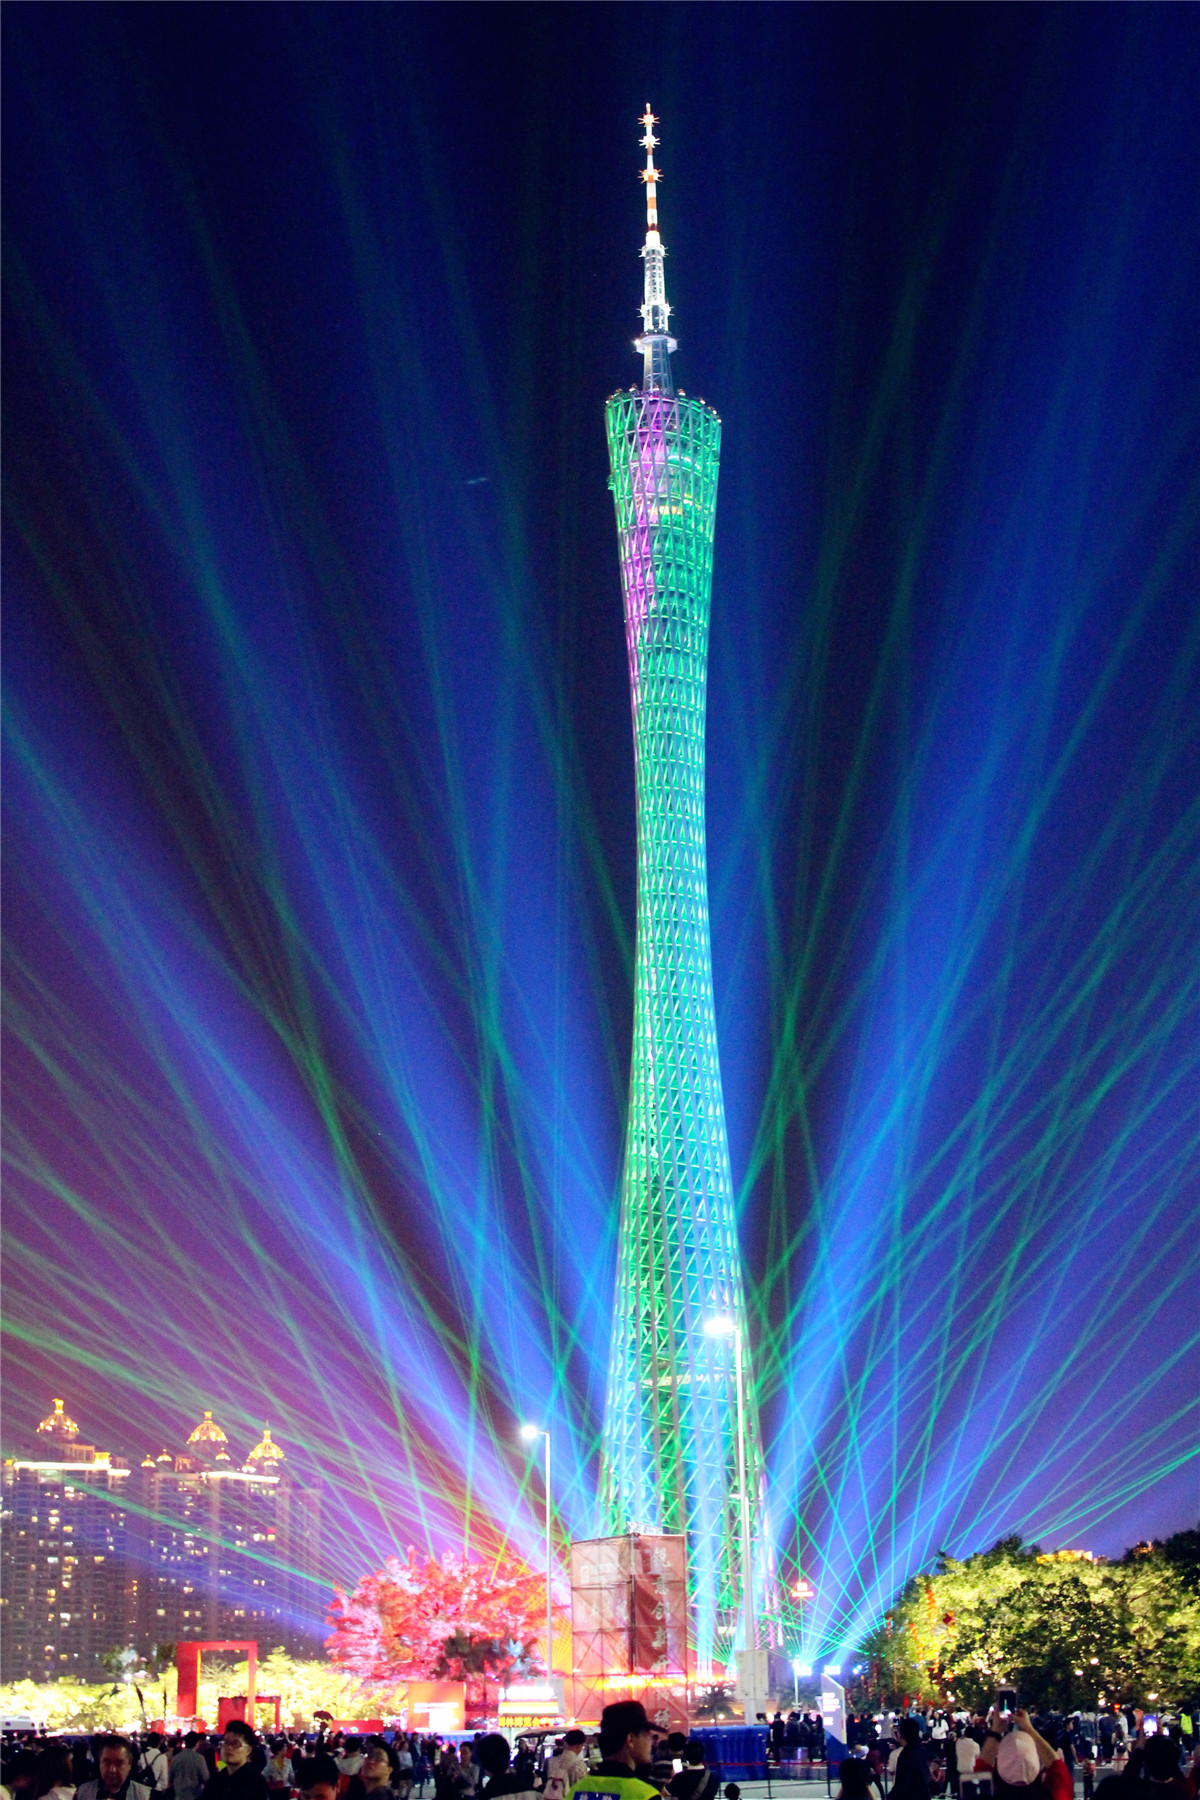 一年只有一次:广州塔上演世界级灯光秀